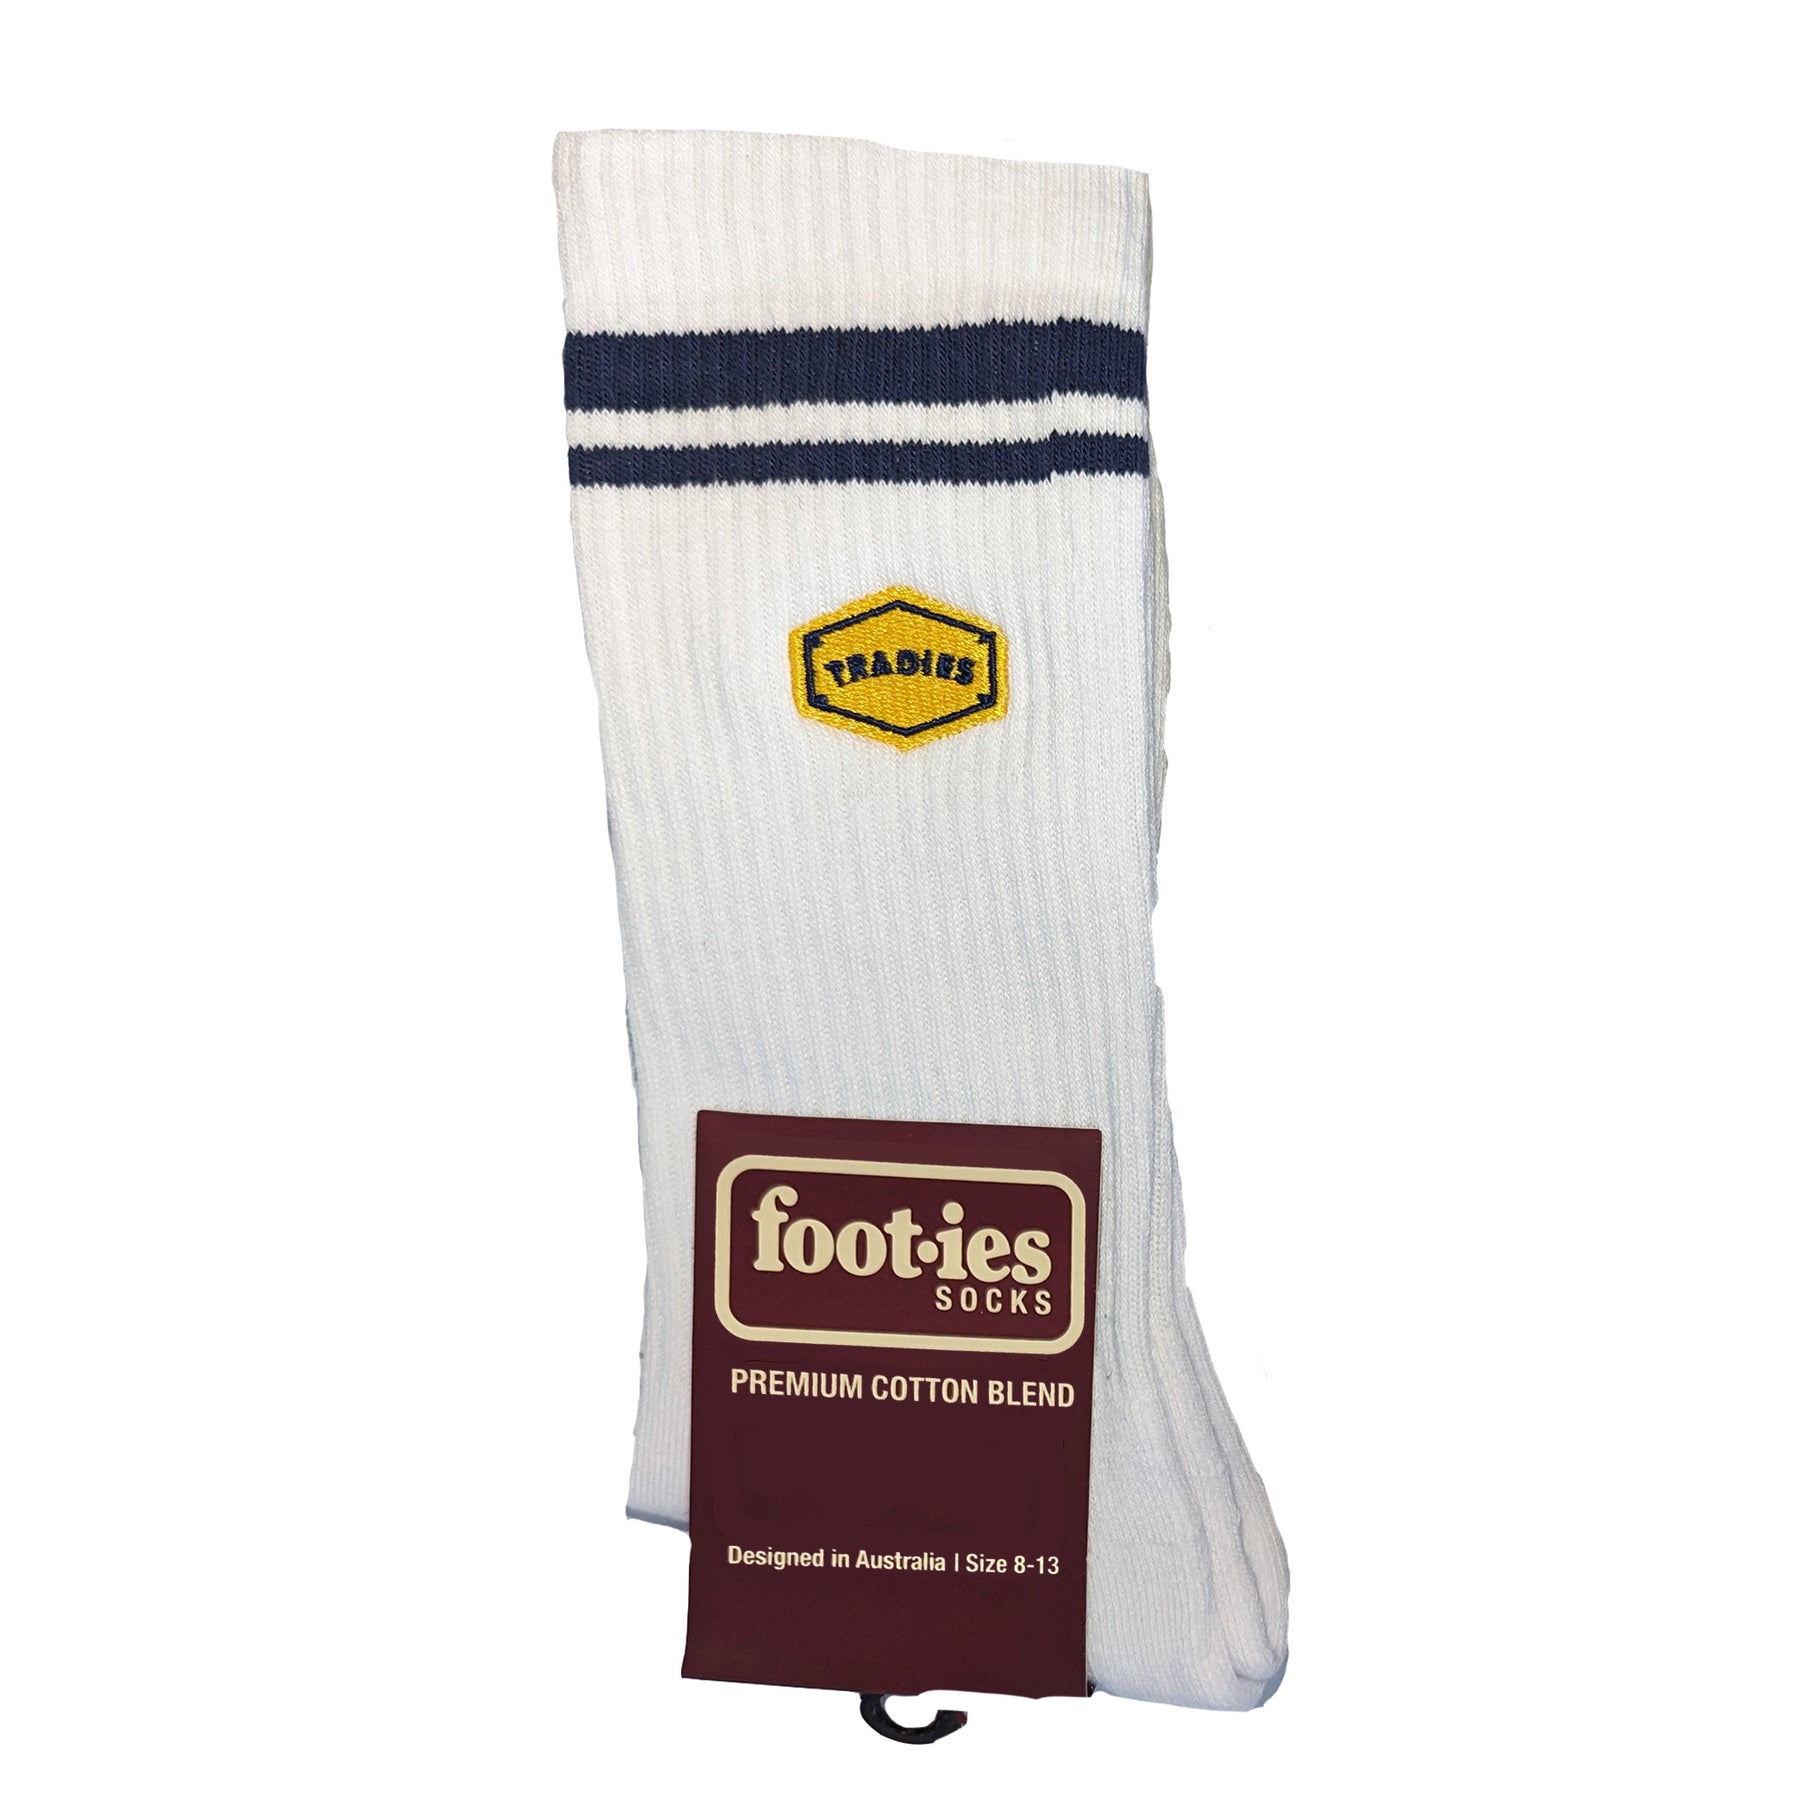 tradies workwear footies socks in white